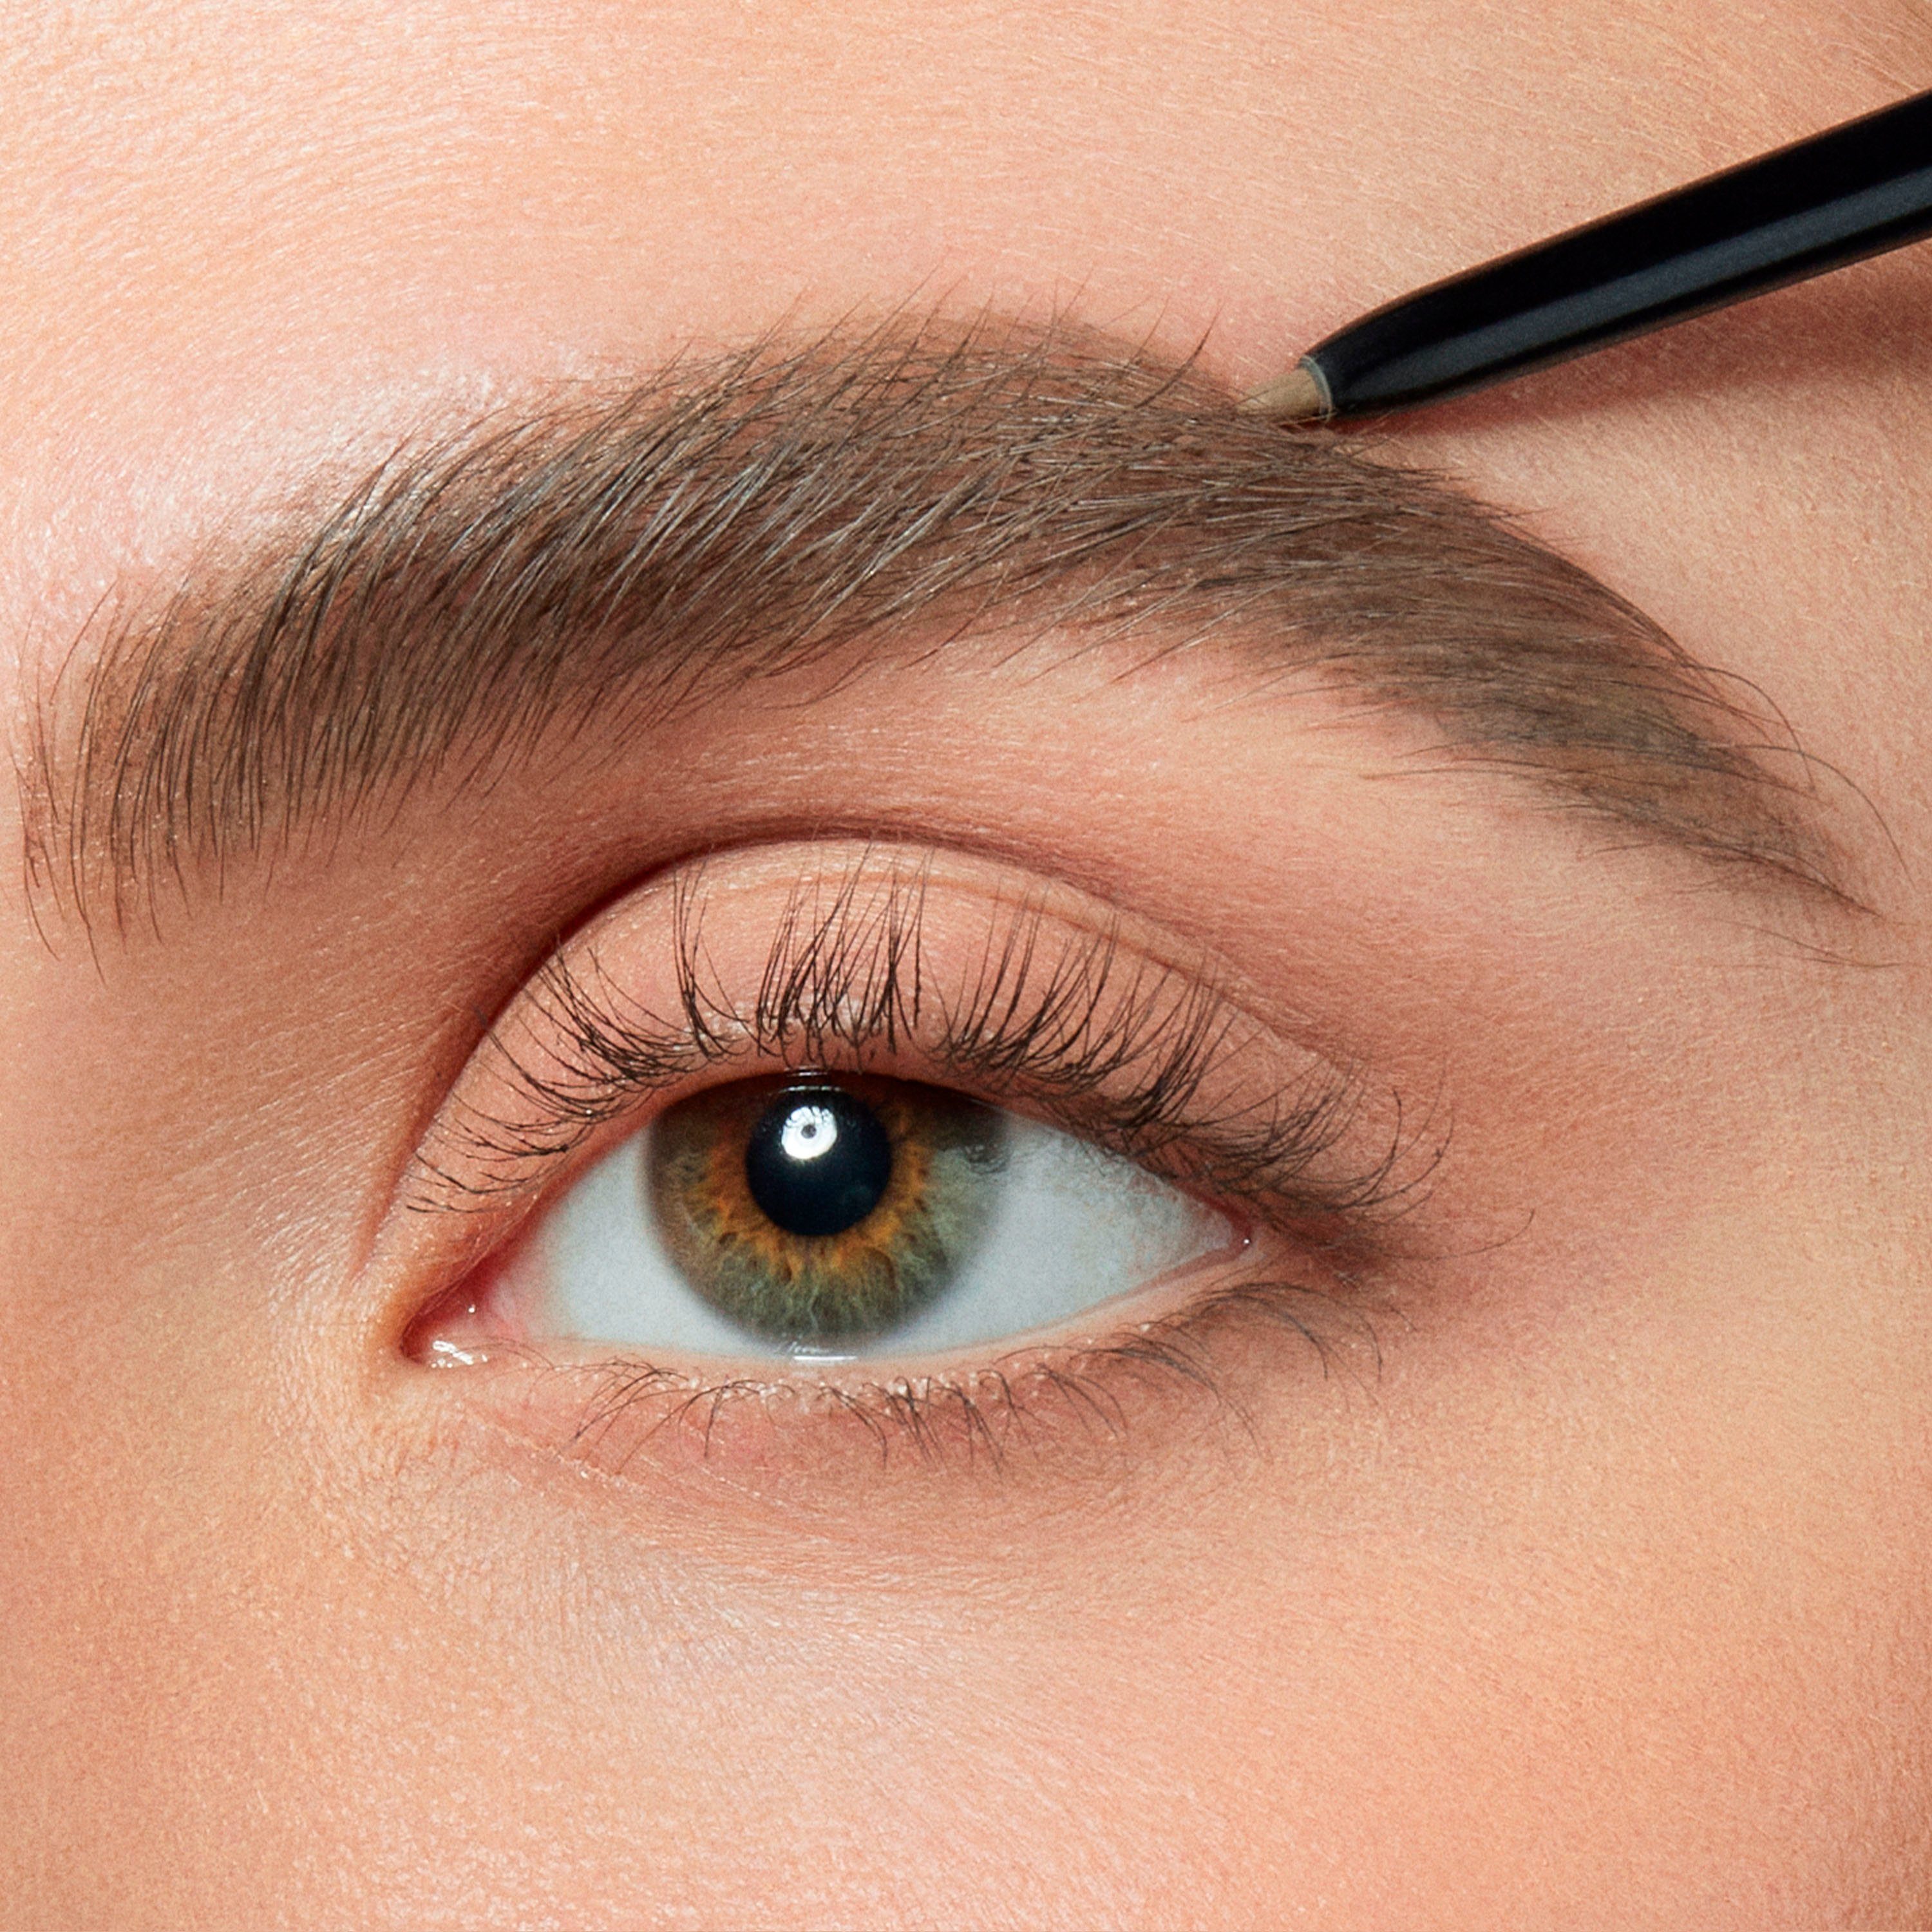 L'ORÉAL PARIS Augenbrauen-Stift Brow Artist mit Skinny Spiralbürste Augen-Make-Up, in Definer, Brunette 105 Stiftform